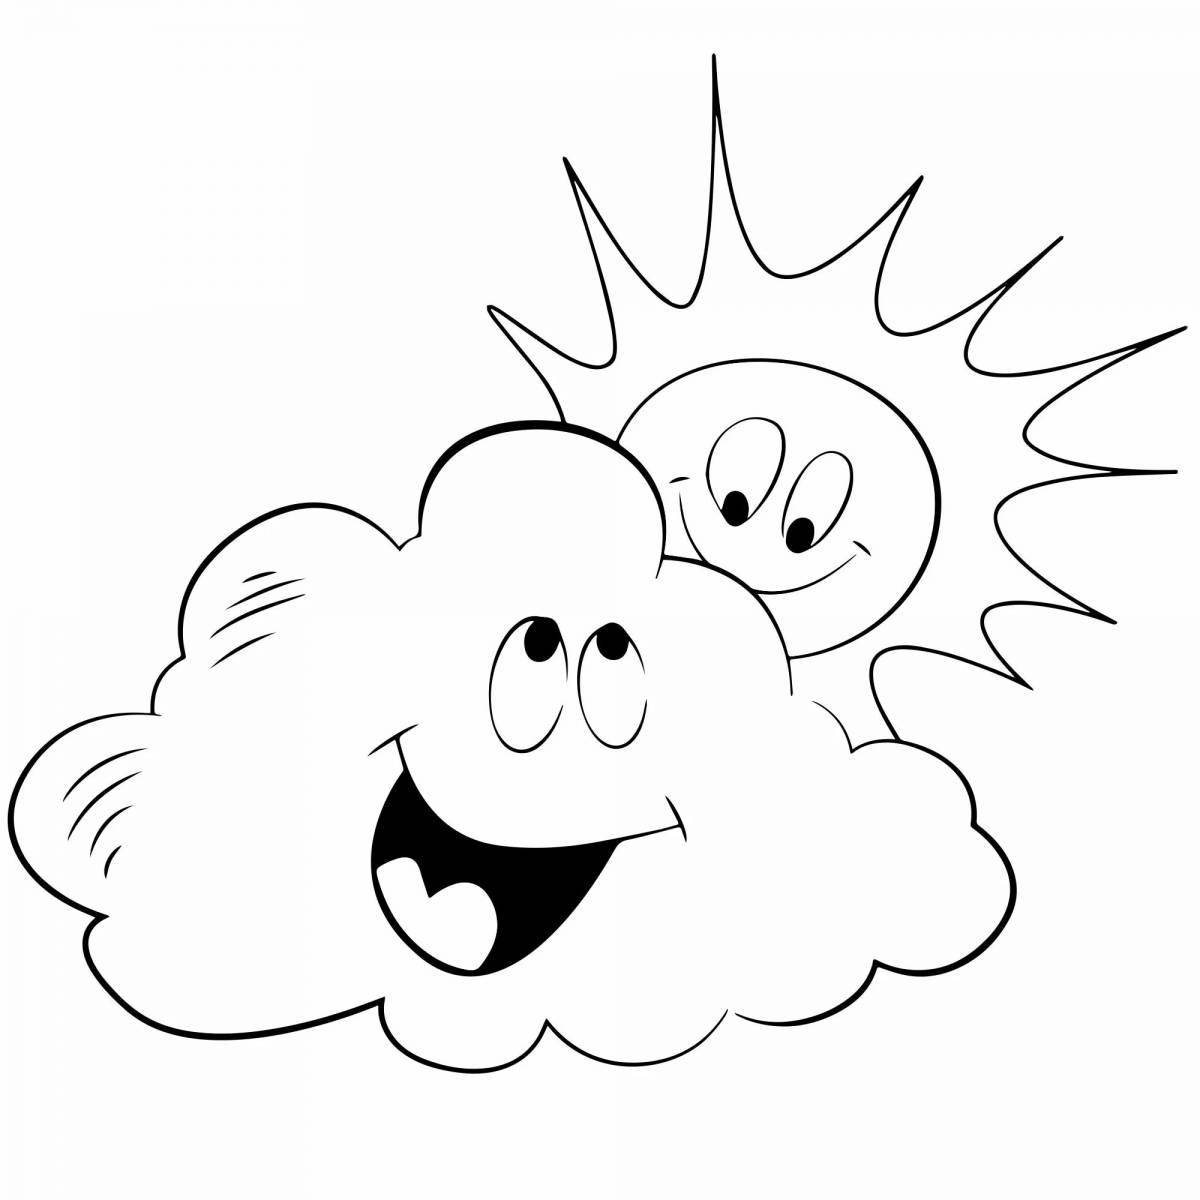 Раскраска dreamy cloud для детей